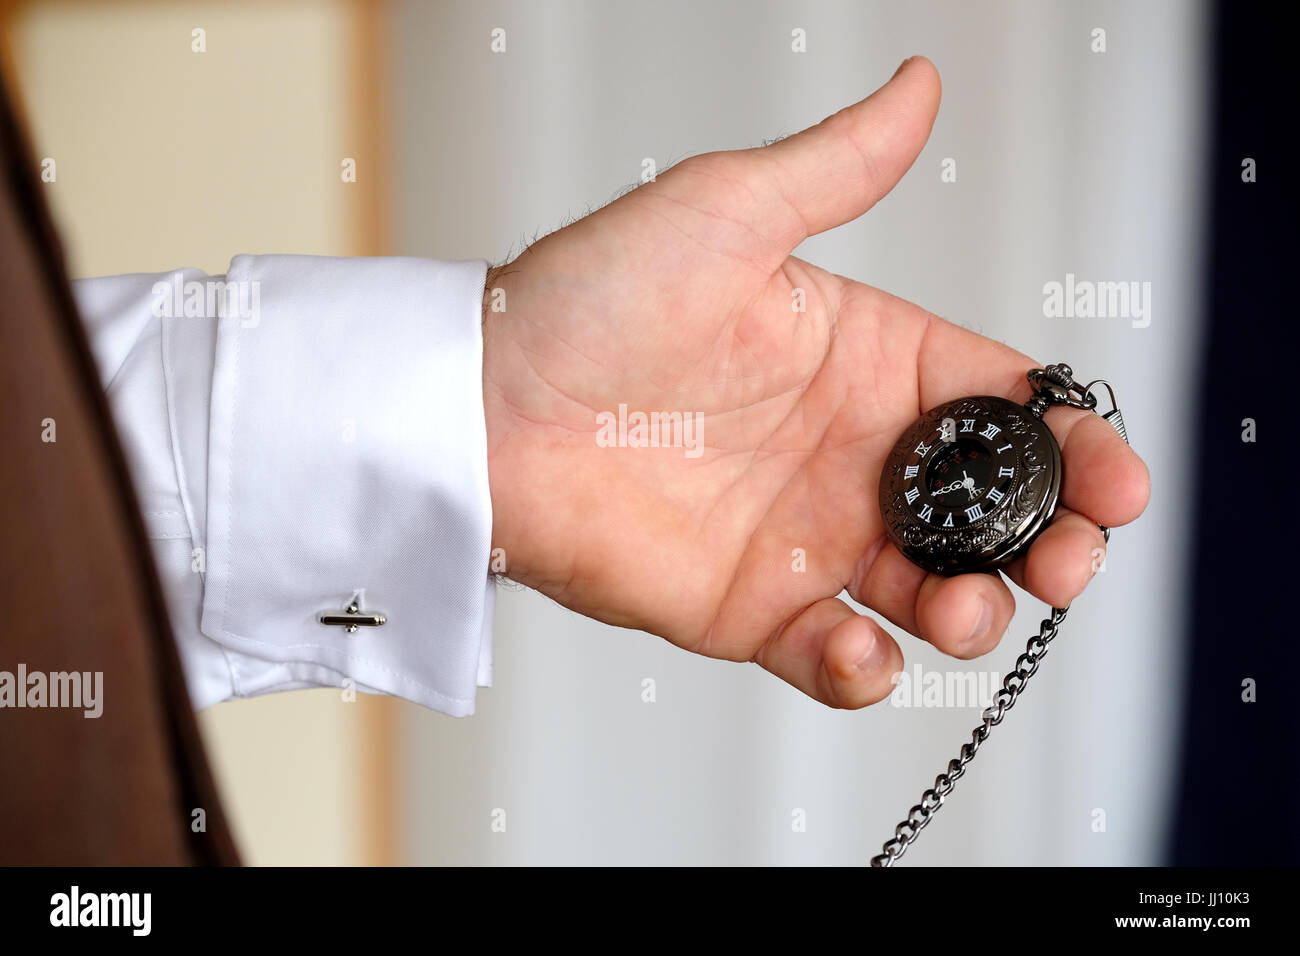 Un homme habillé avec élégance vérifie le temps à l'aide d'une montre de poche attachée à son gilet avec une chaîne. La montre a un visage noir et des chiffres romains blancs Banque D'Images